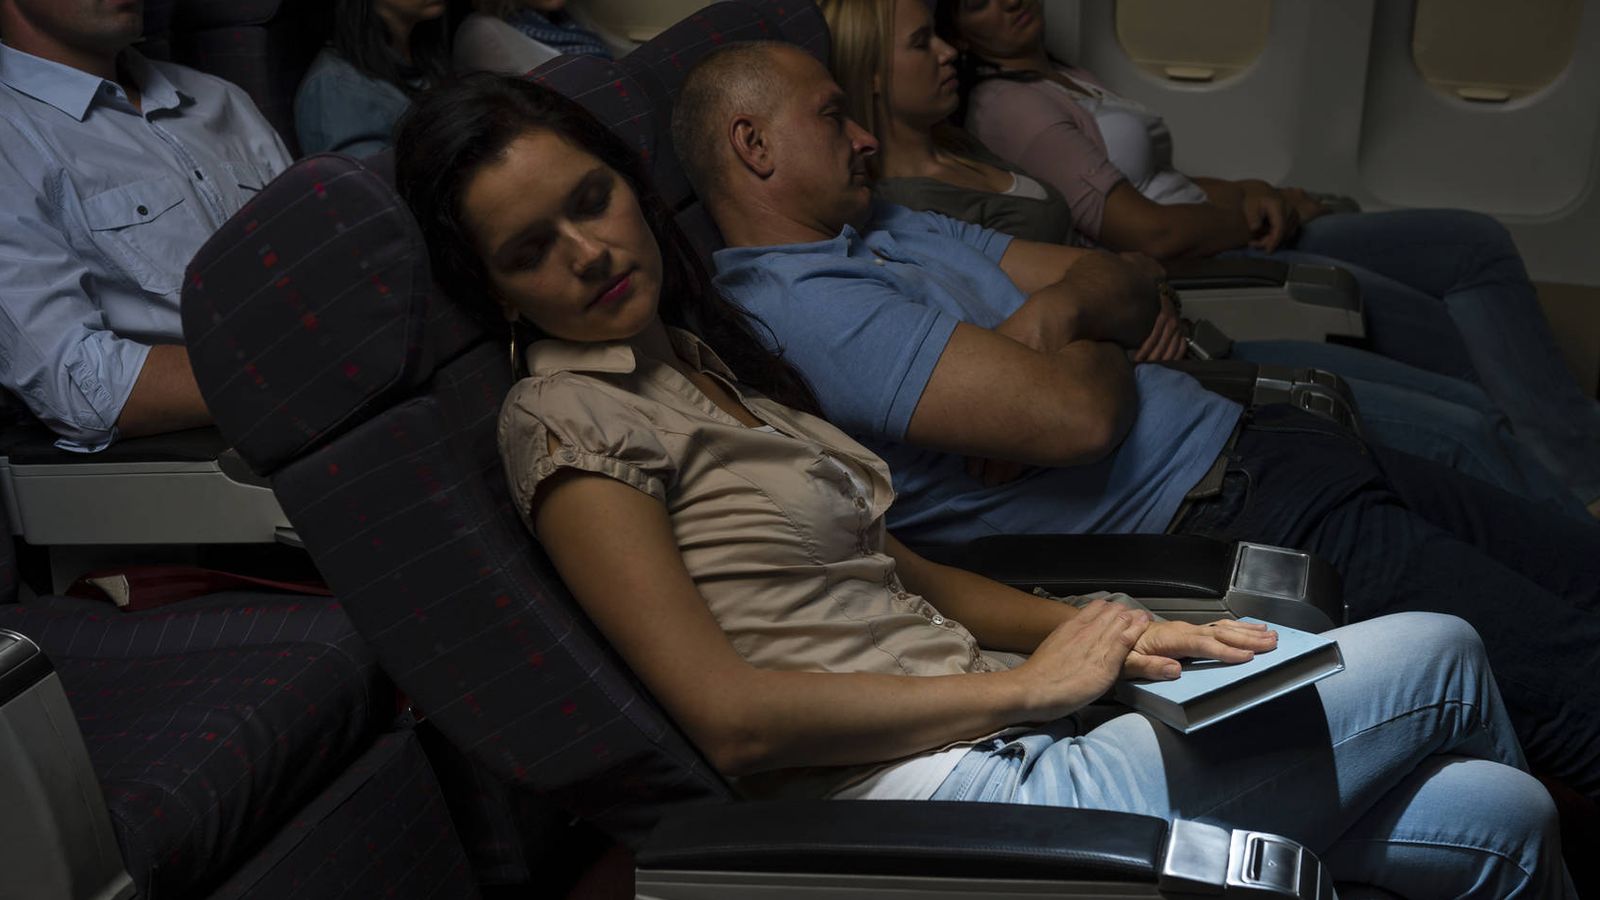 Foto: Los vuelos de larga duración son aquellos en los que es más probable que se produzca una violación. (iStock)